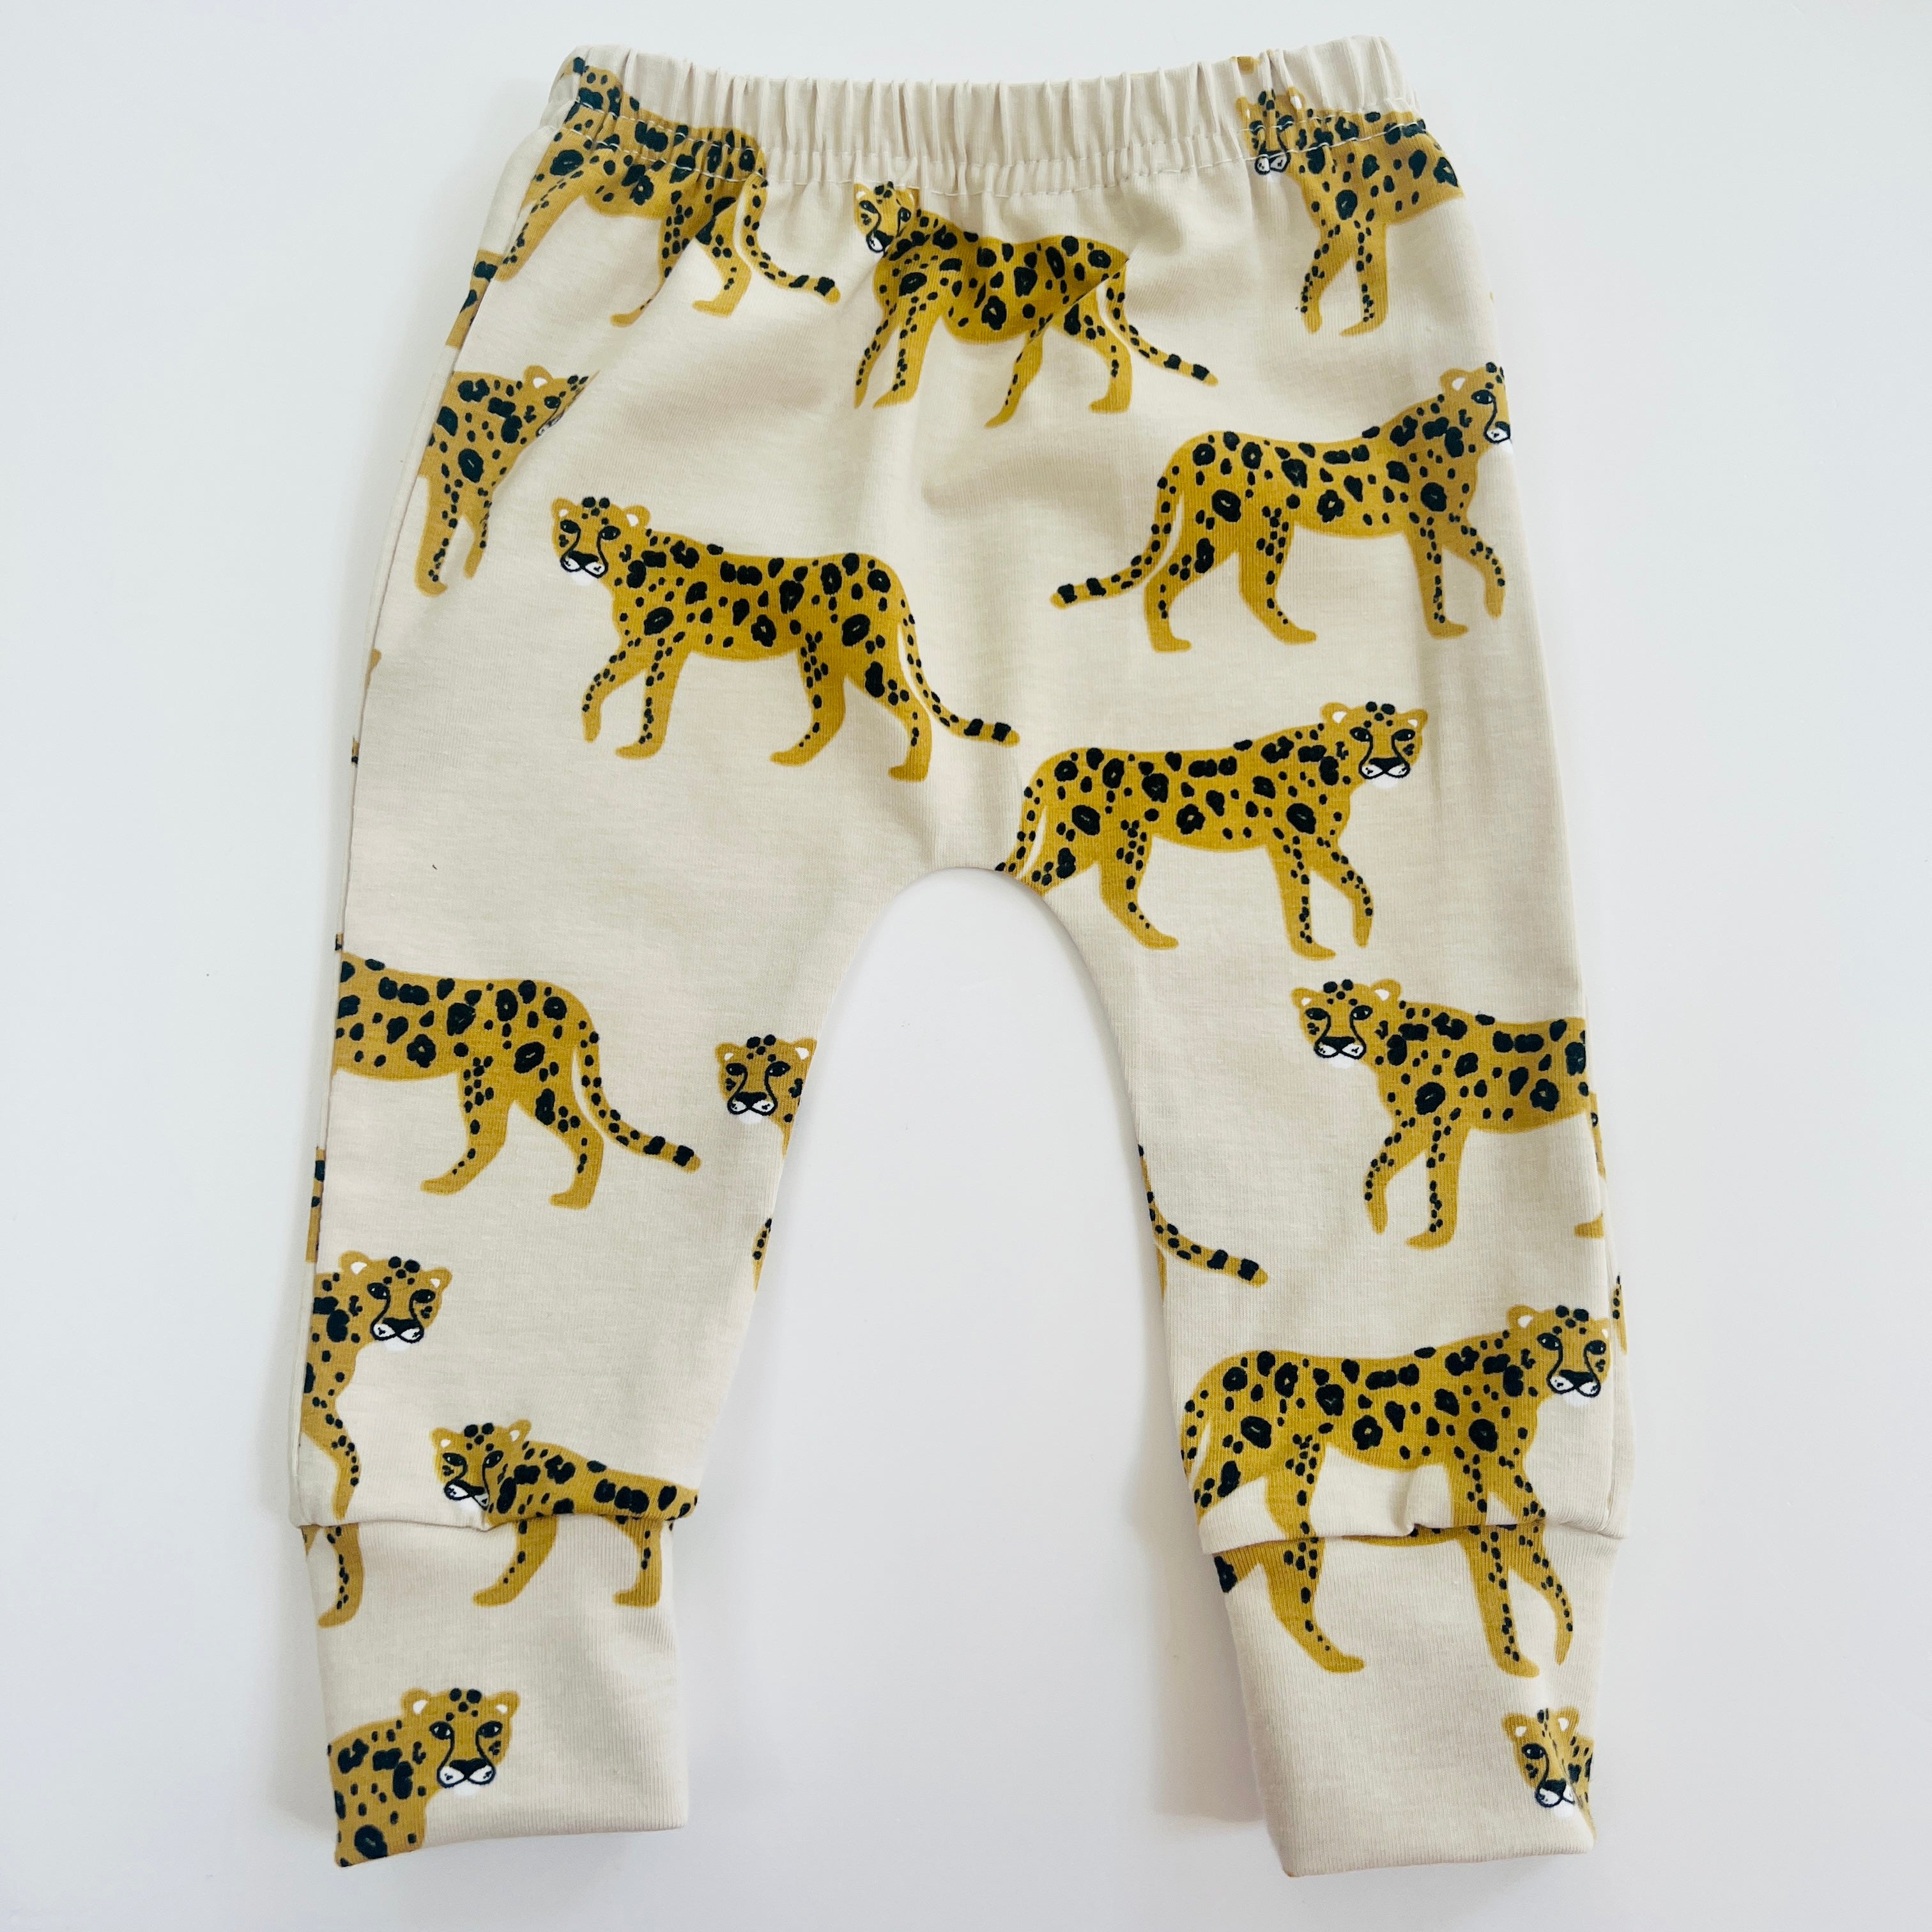 Eddie & Bee organic cotton leggings in oat "Cheetah" print.